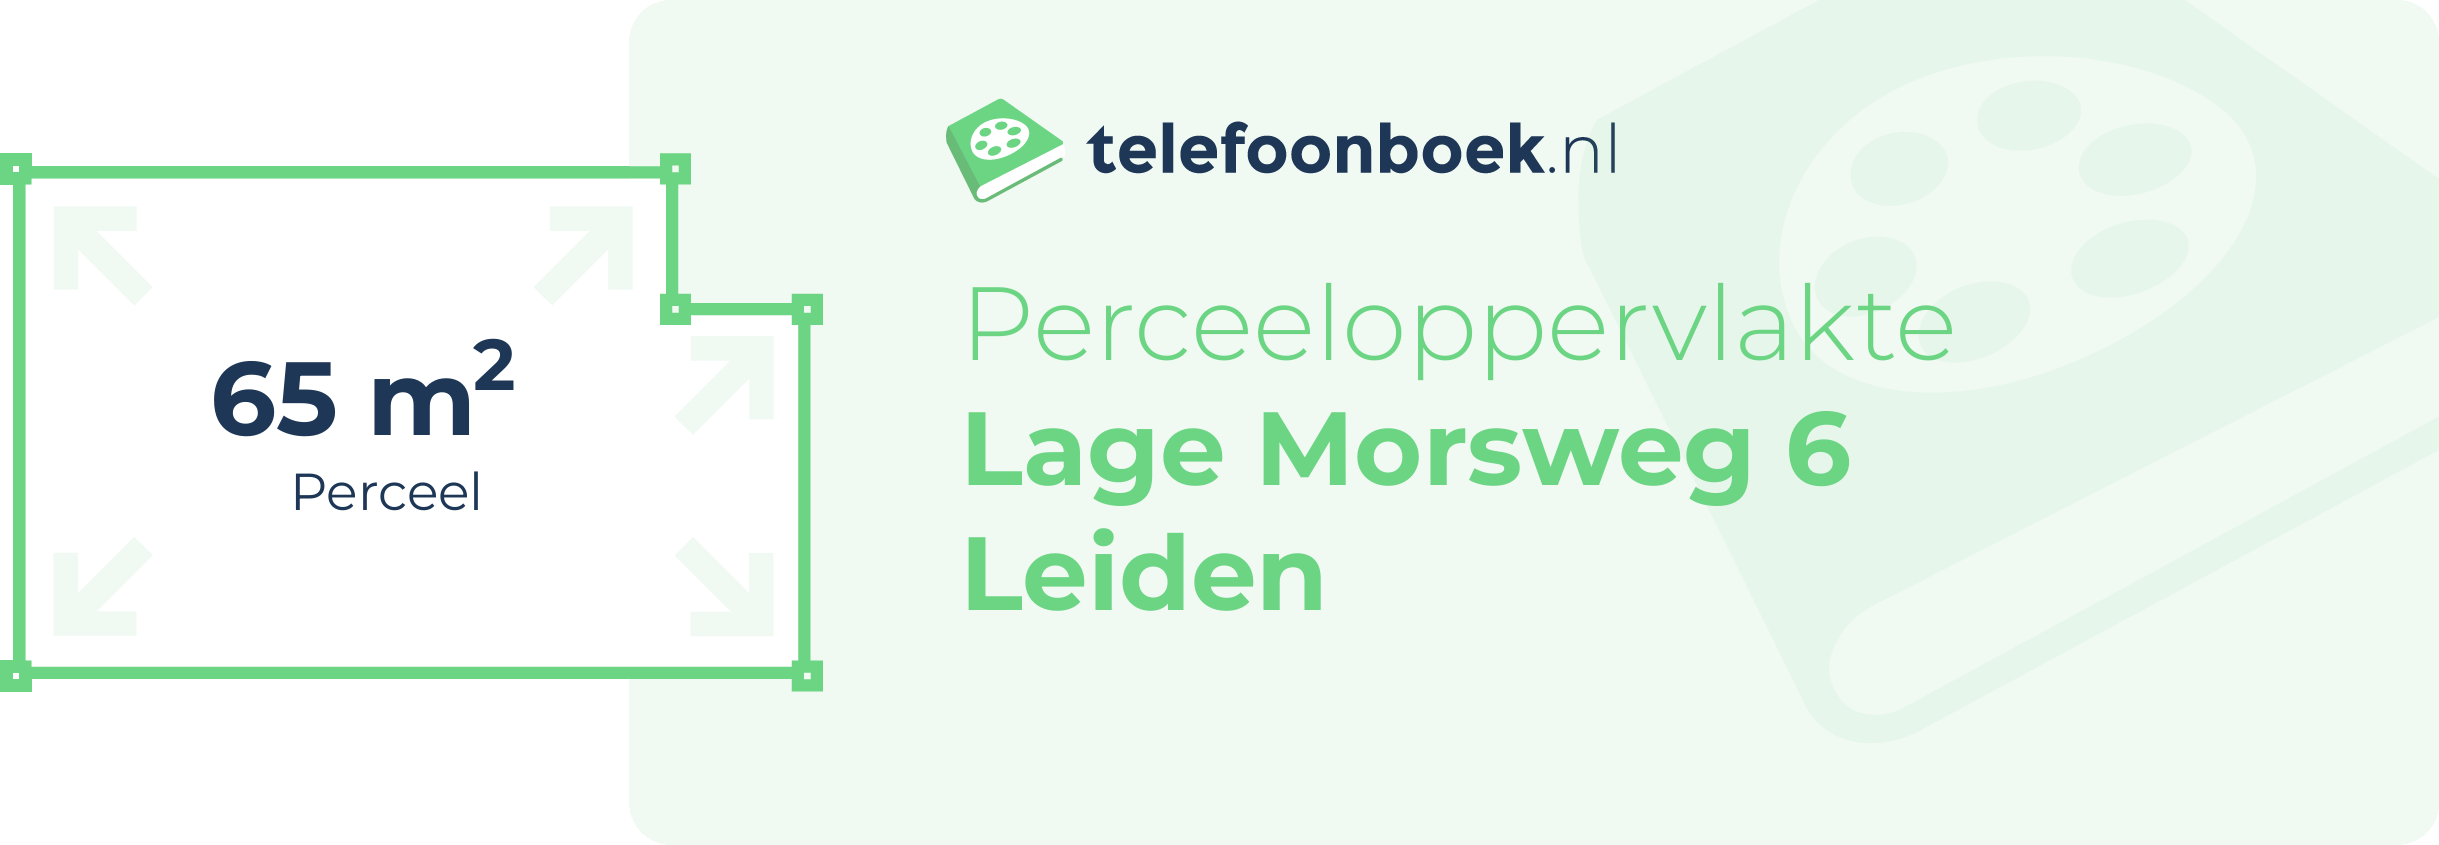 Perceeloppervlakte Lage Morsweg 6 Leiden